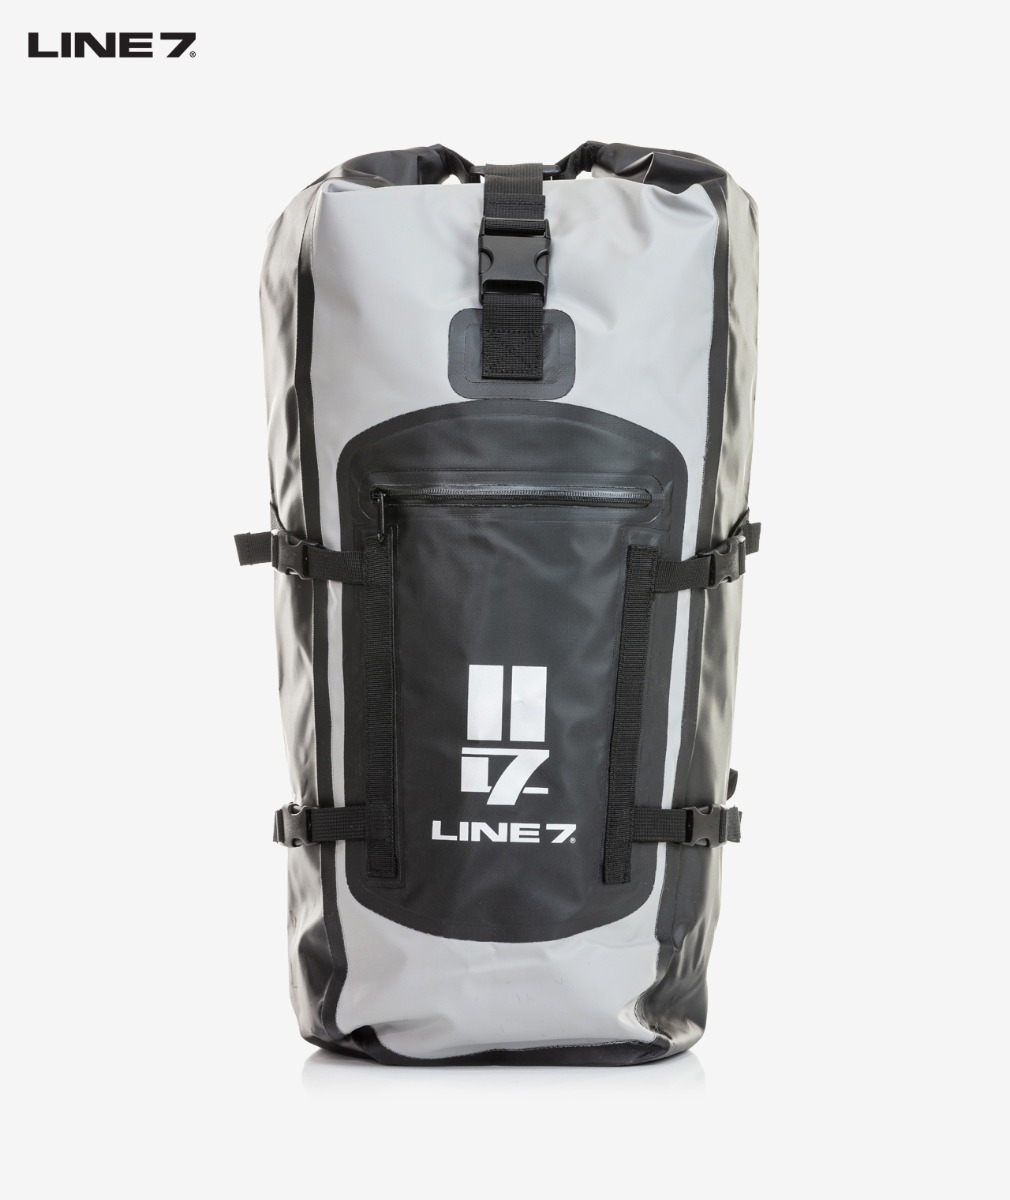 Line 7 Waterproof Backpack 35L